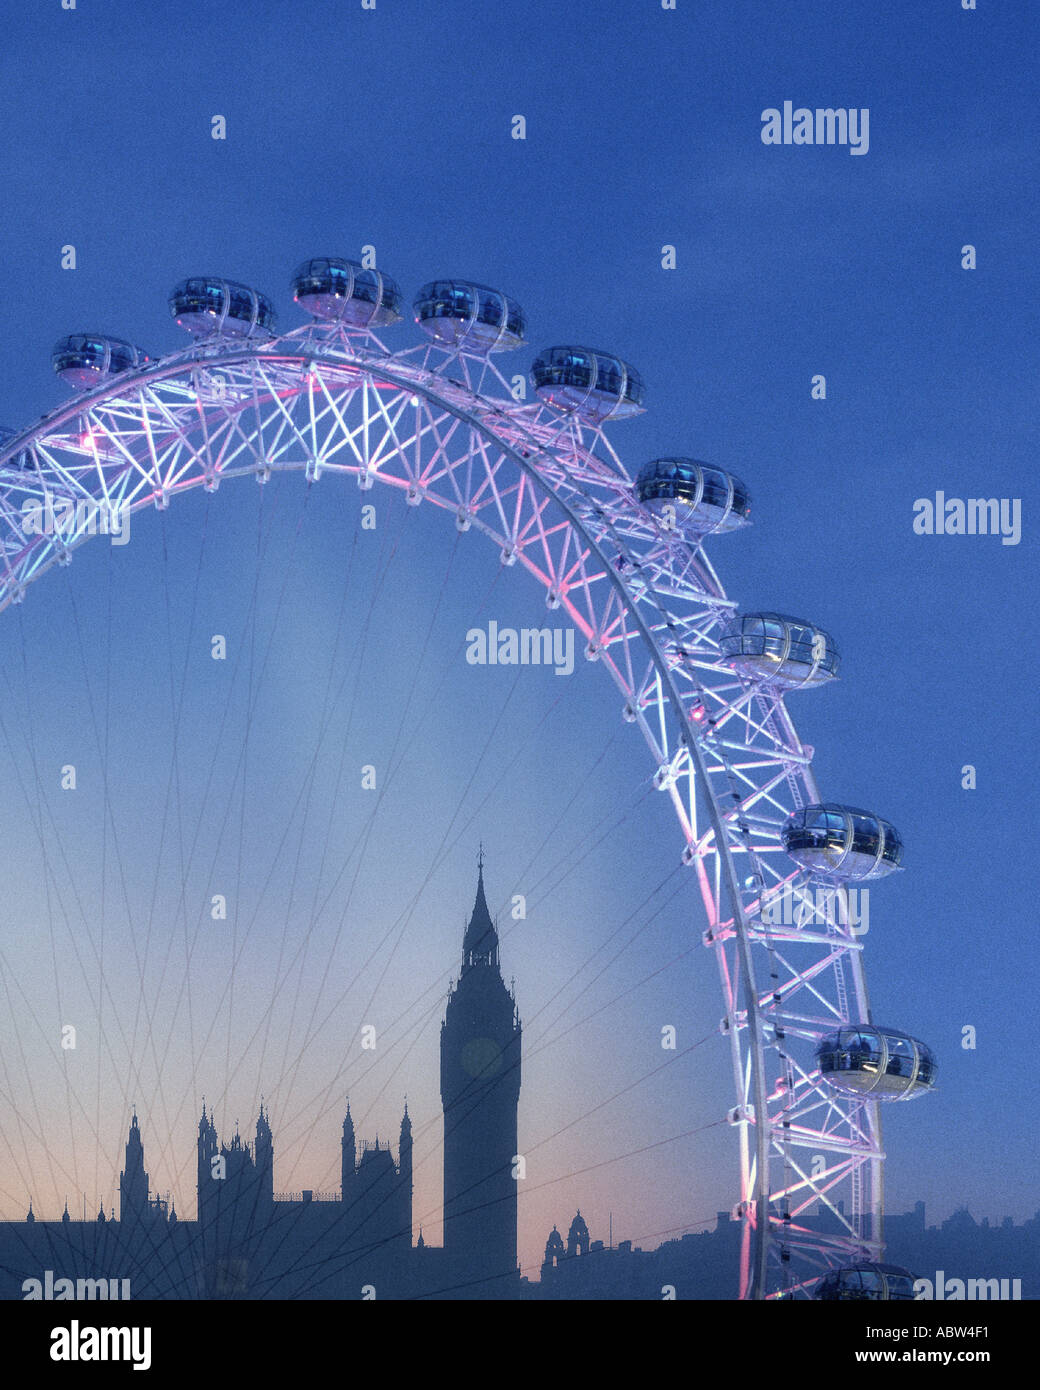 GB - Londres: El London Eye y el Big Ben (Elizabeth Tower) por noche Foto de stock